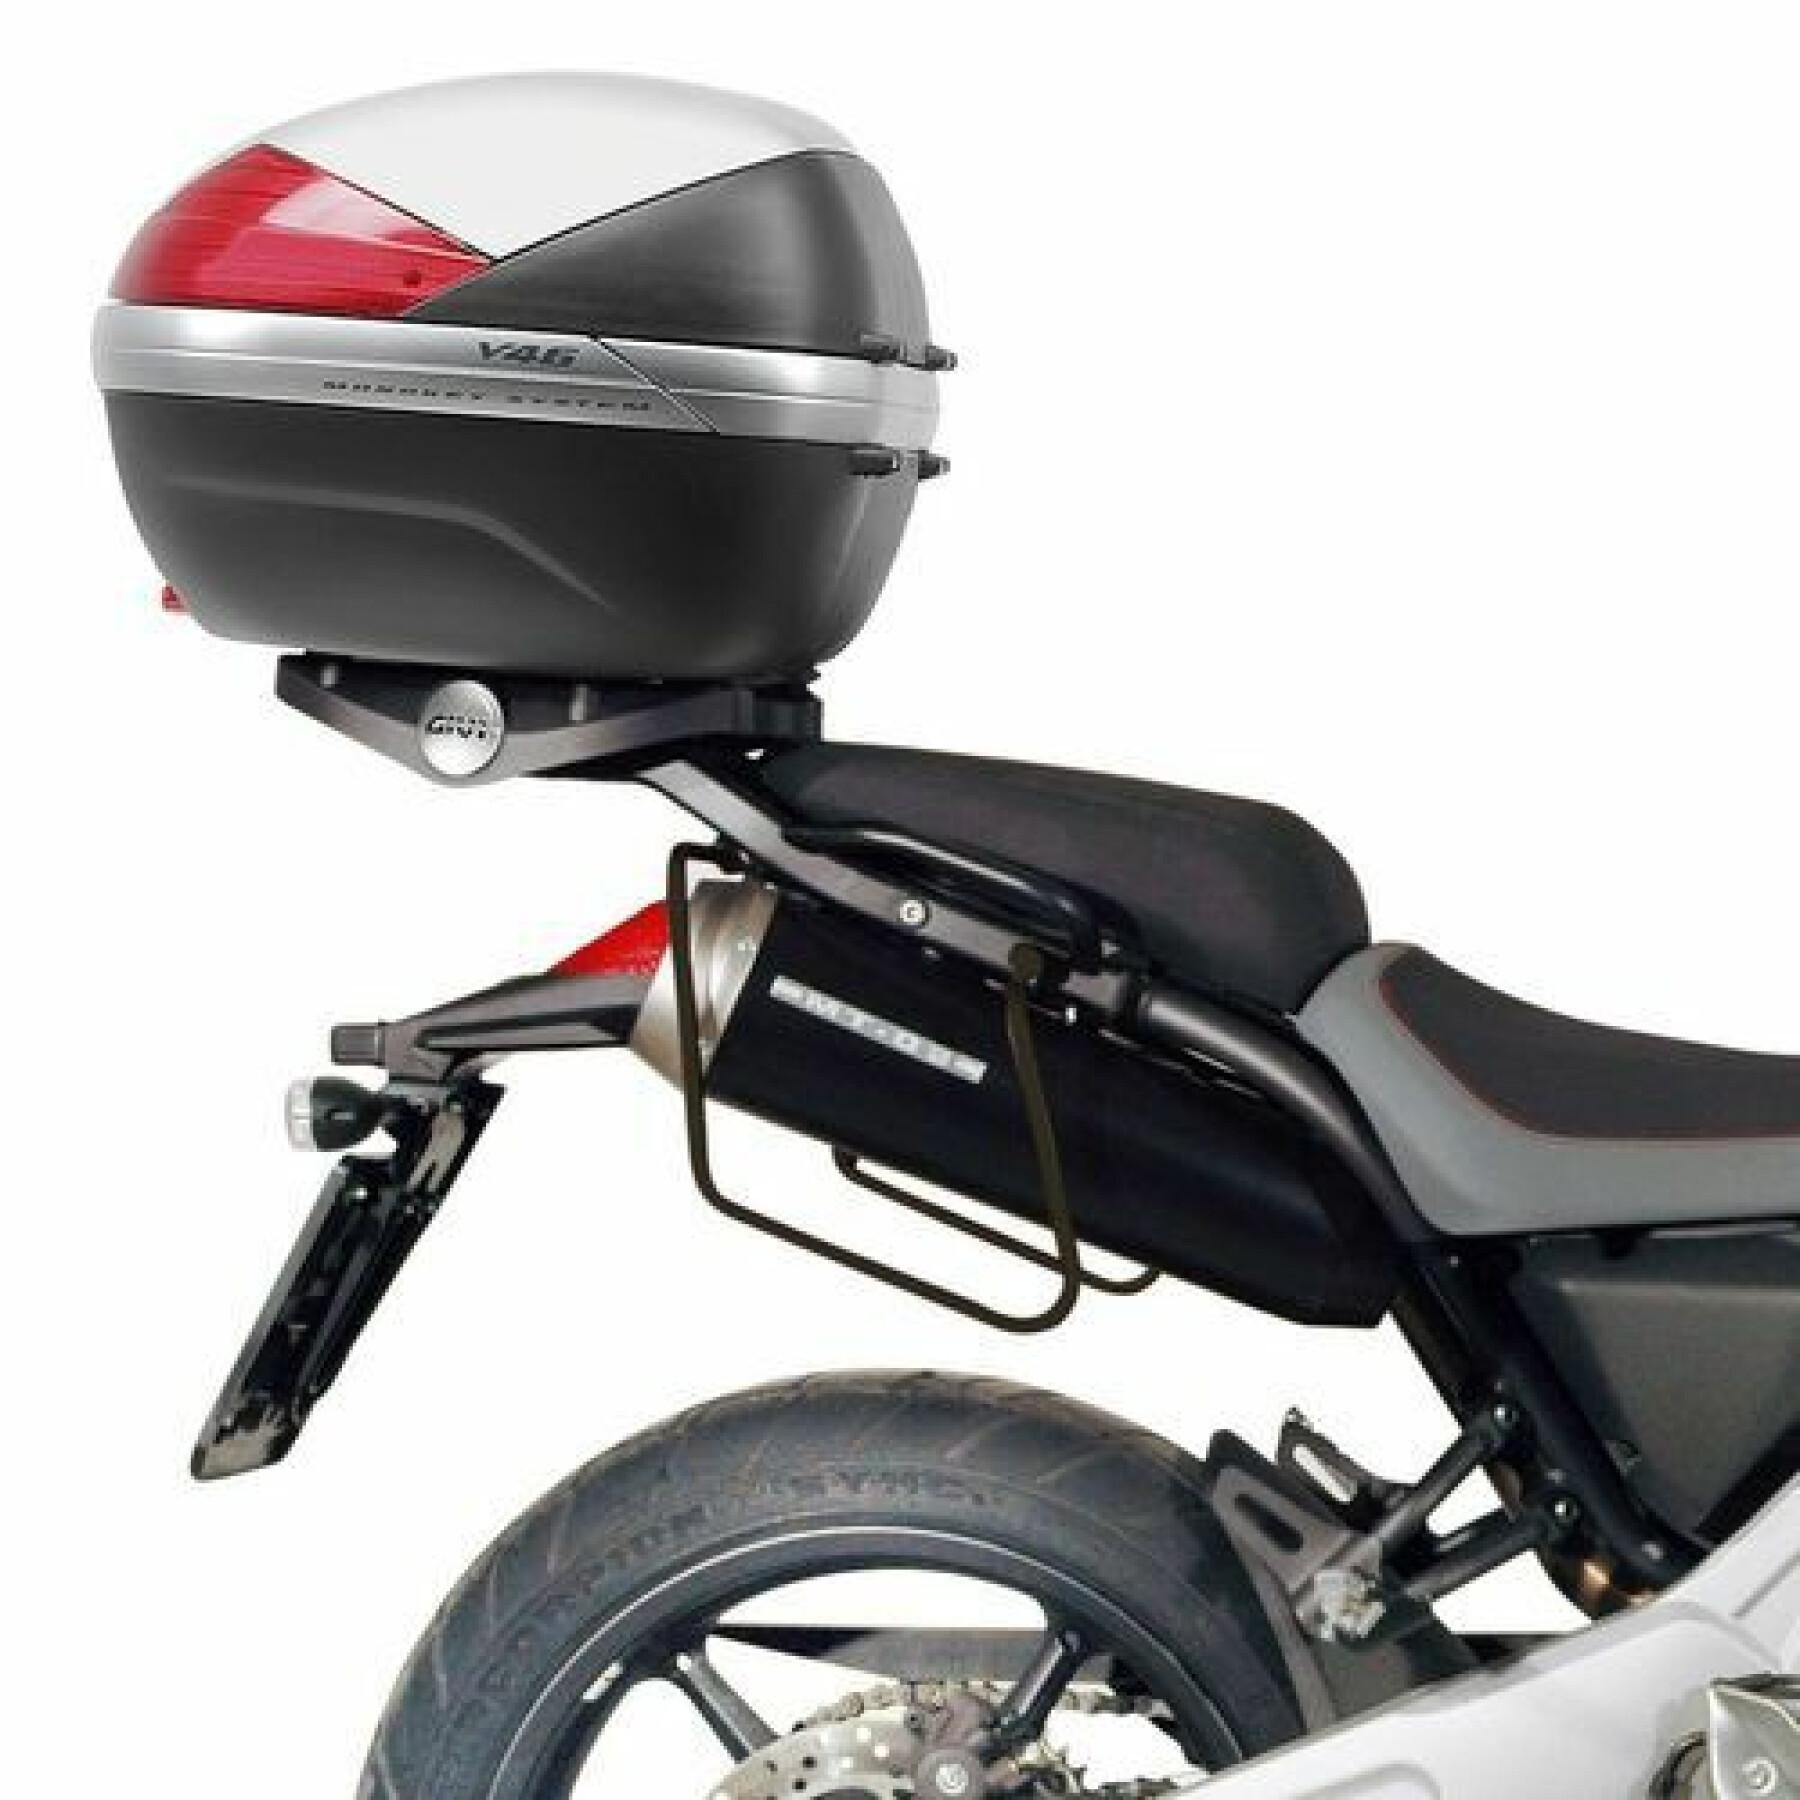 Riding bag holders Givi Yamaha MT07